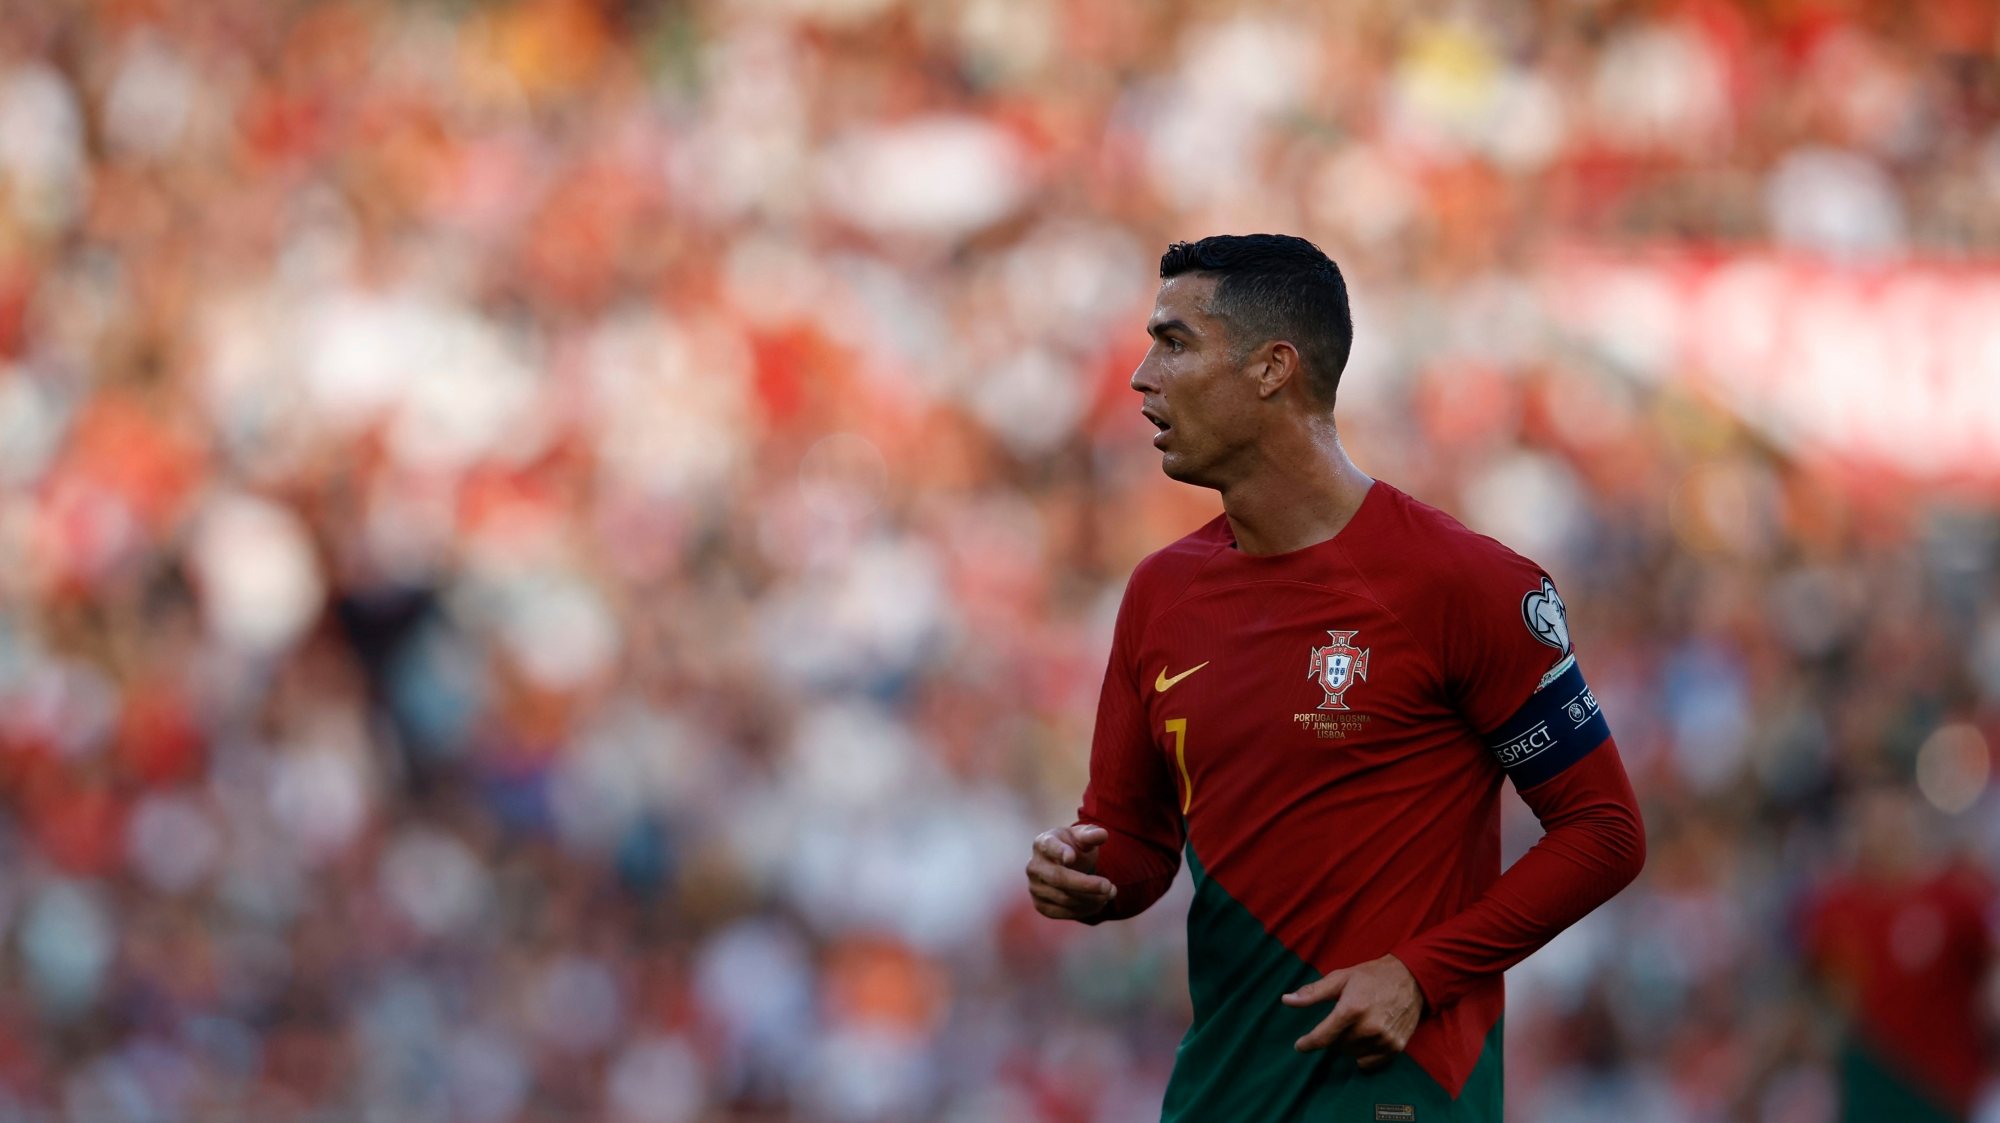 Cristiano Ronaldo marca em seu 200º jogo na Seleção de Portugal - PNOTÍCIAS